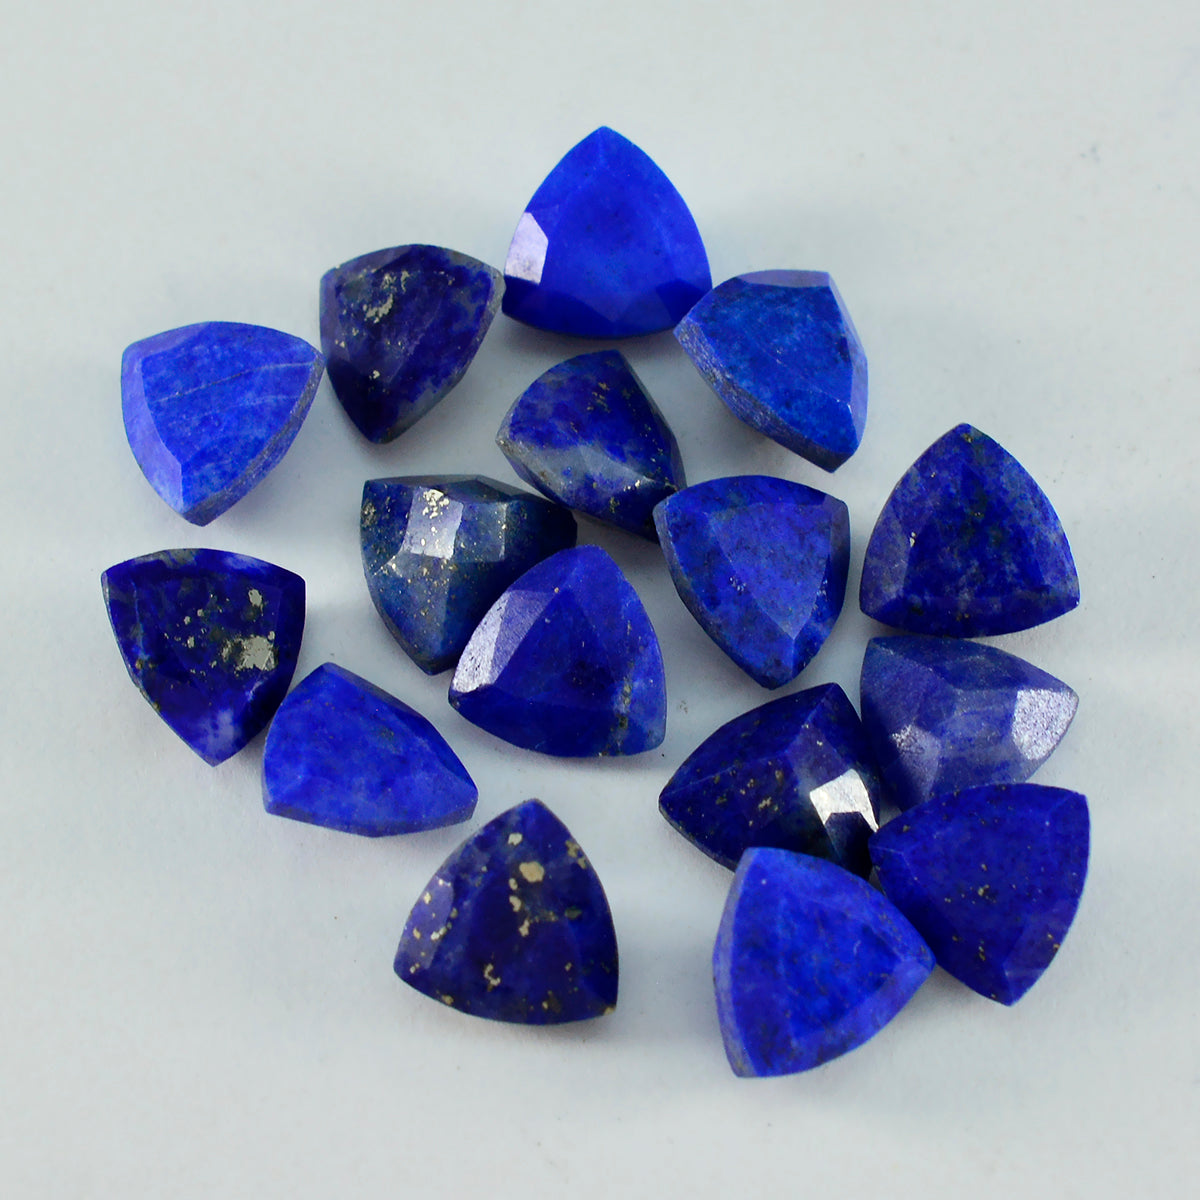 Riyogems 1 pièce de lapis-lazuli bleu véritable à facettes 6x6mm en forme de trillion, gemme en vrac de qualité impressionnante